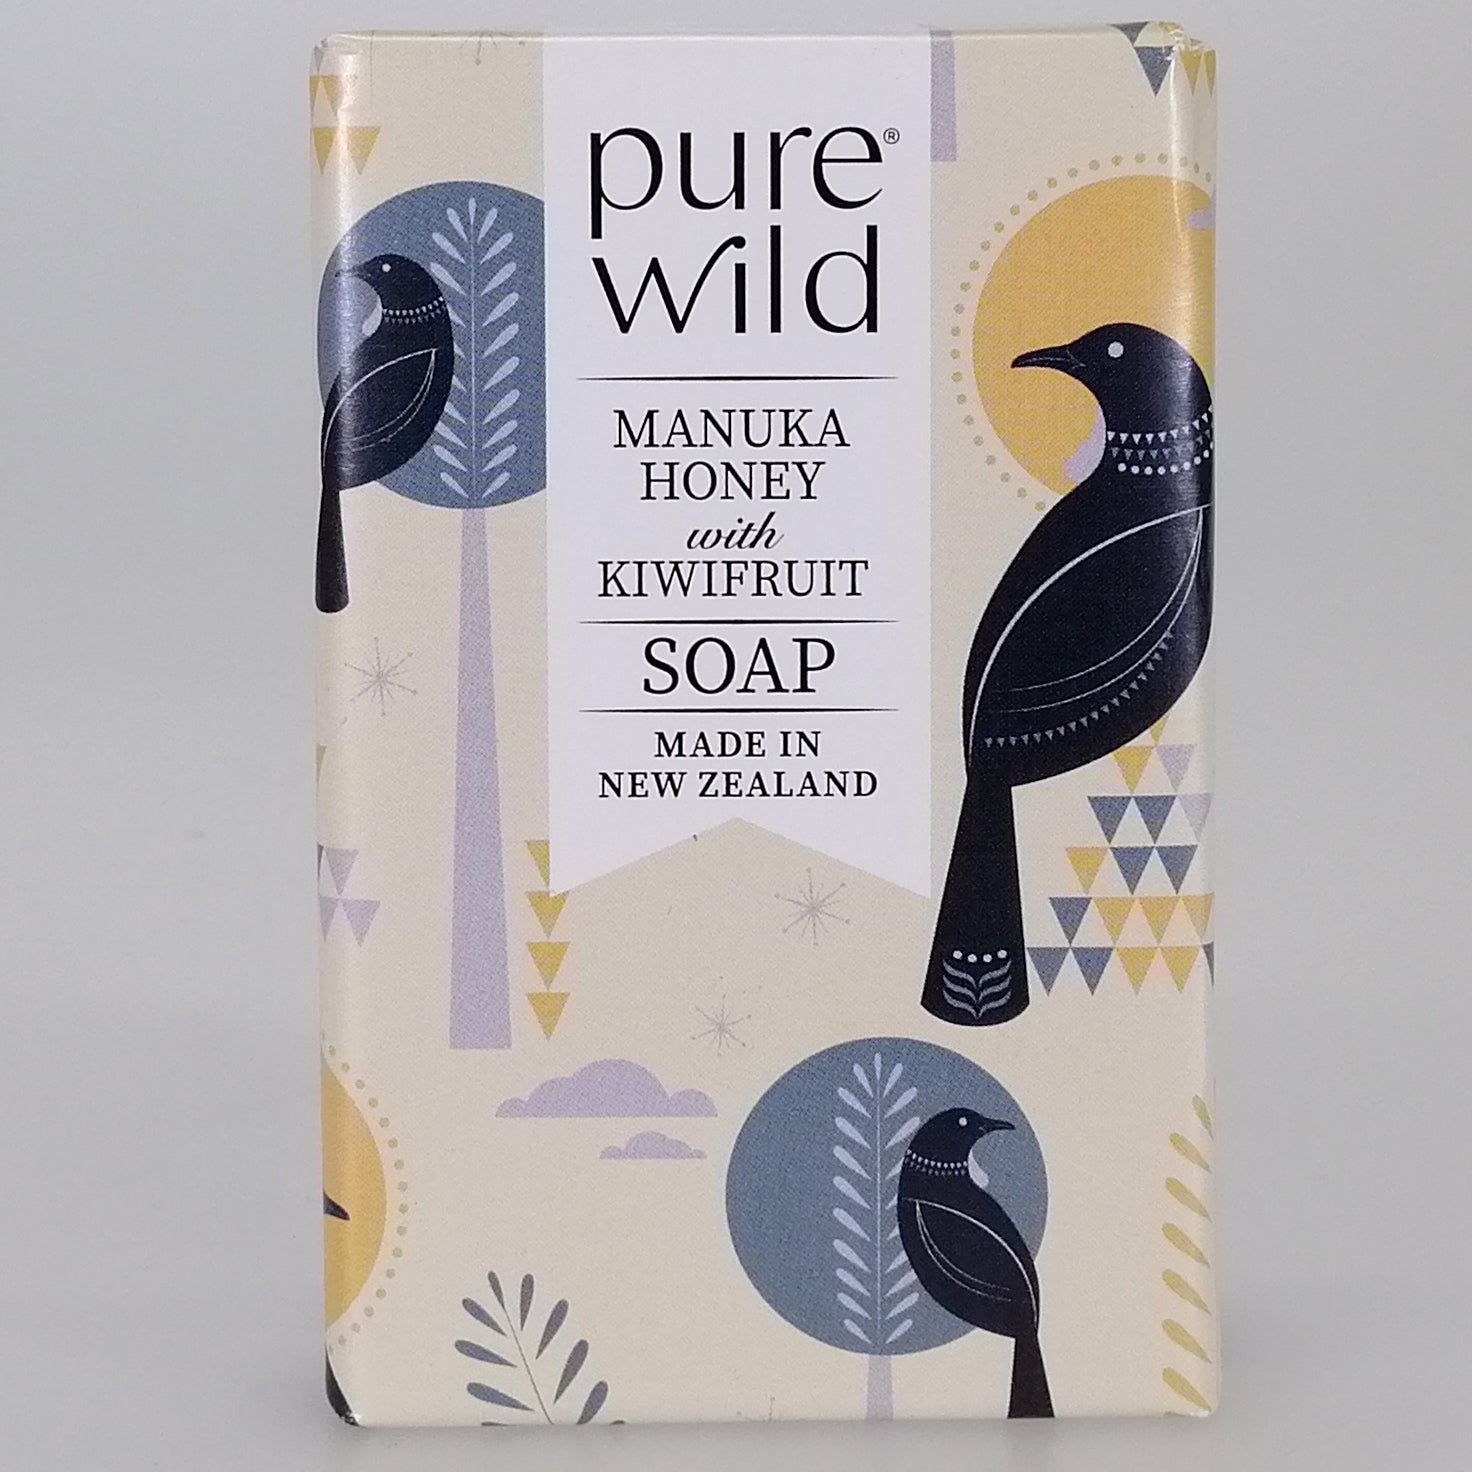 Purewild Manuka Honey & Kiwifruit Soap - Tui